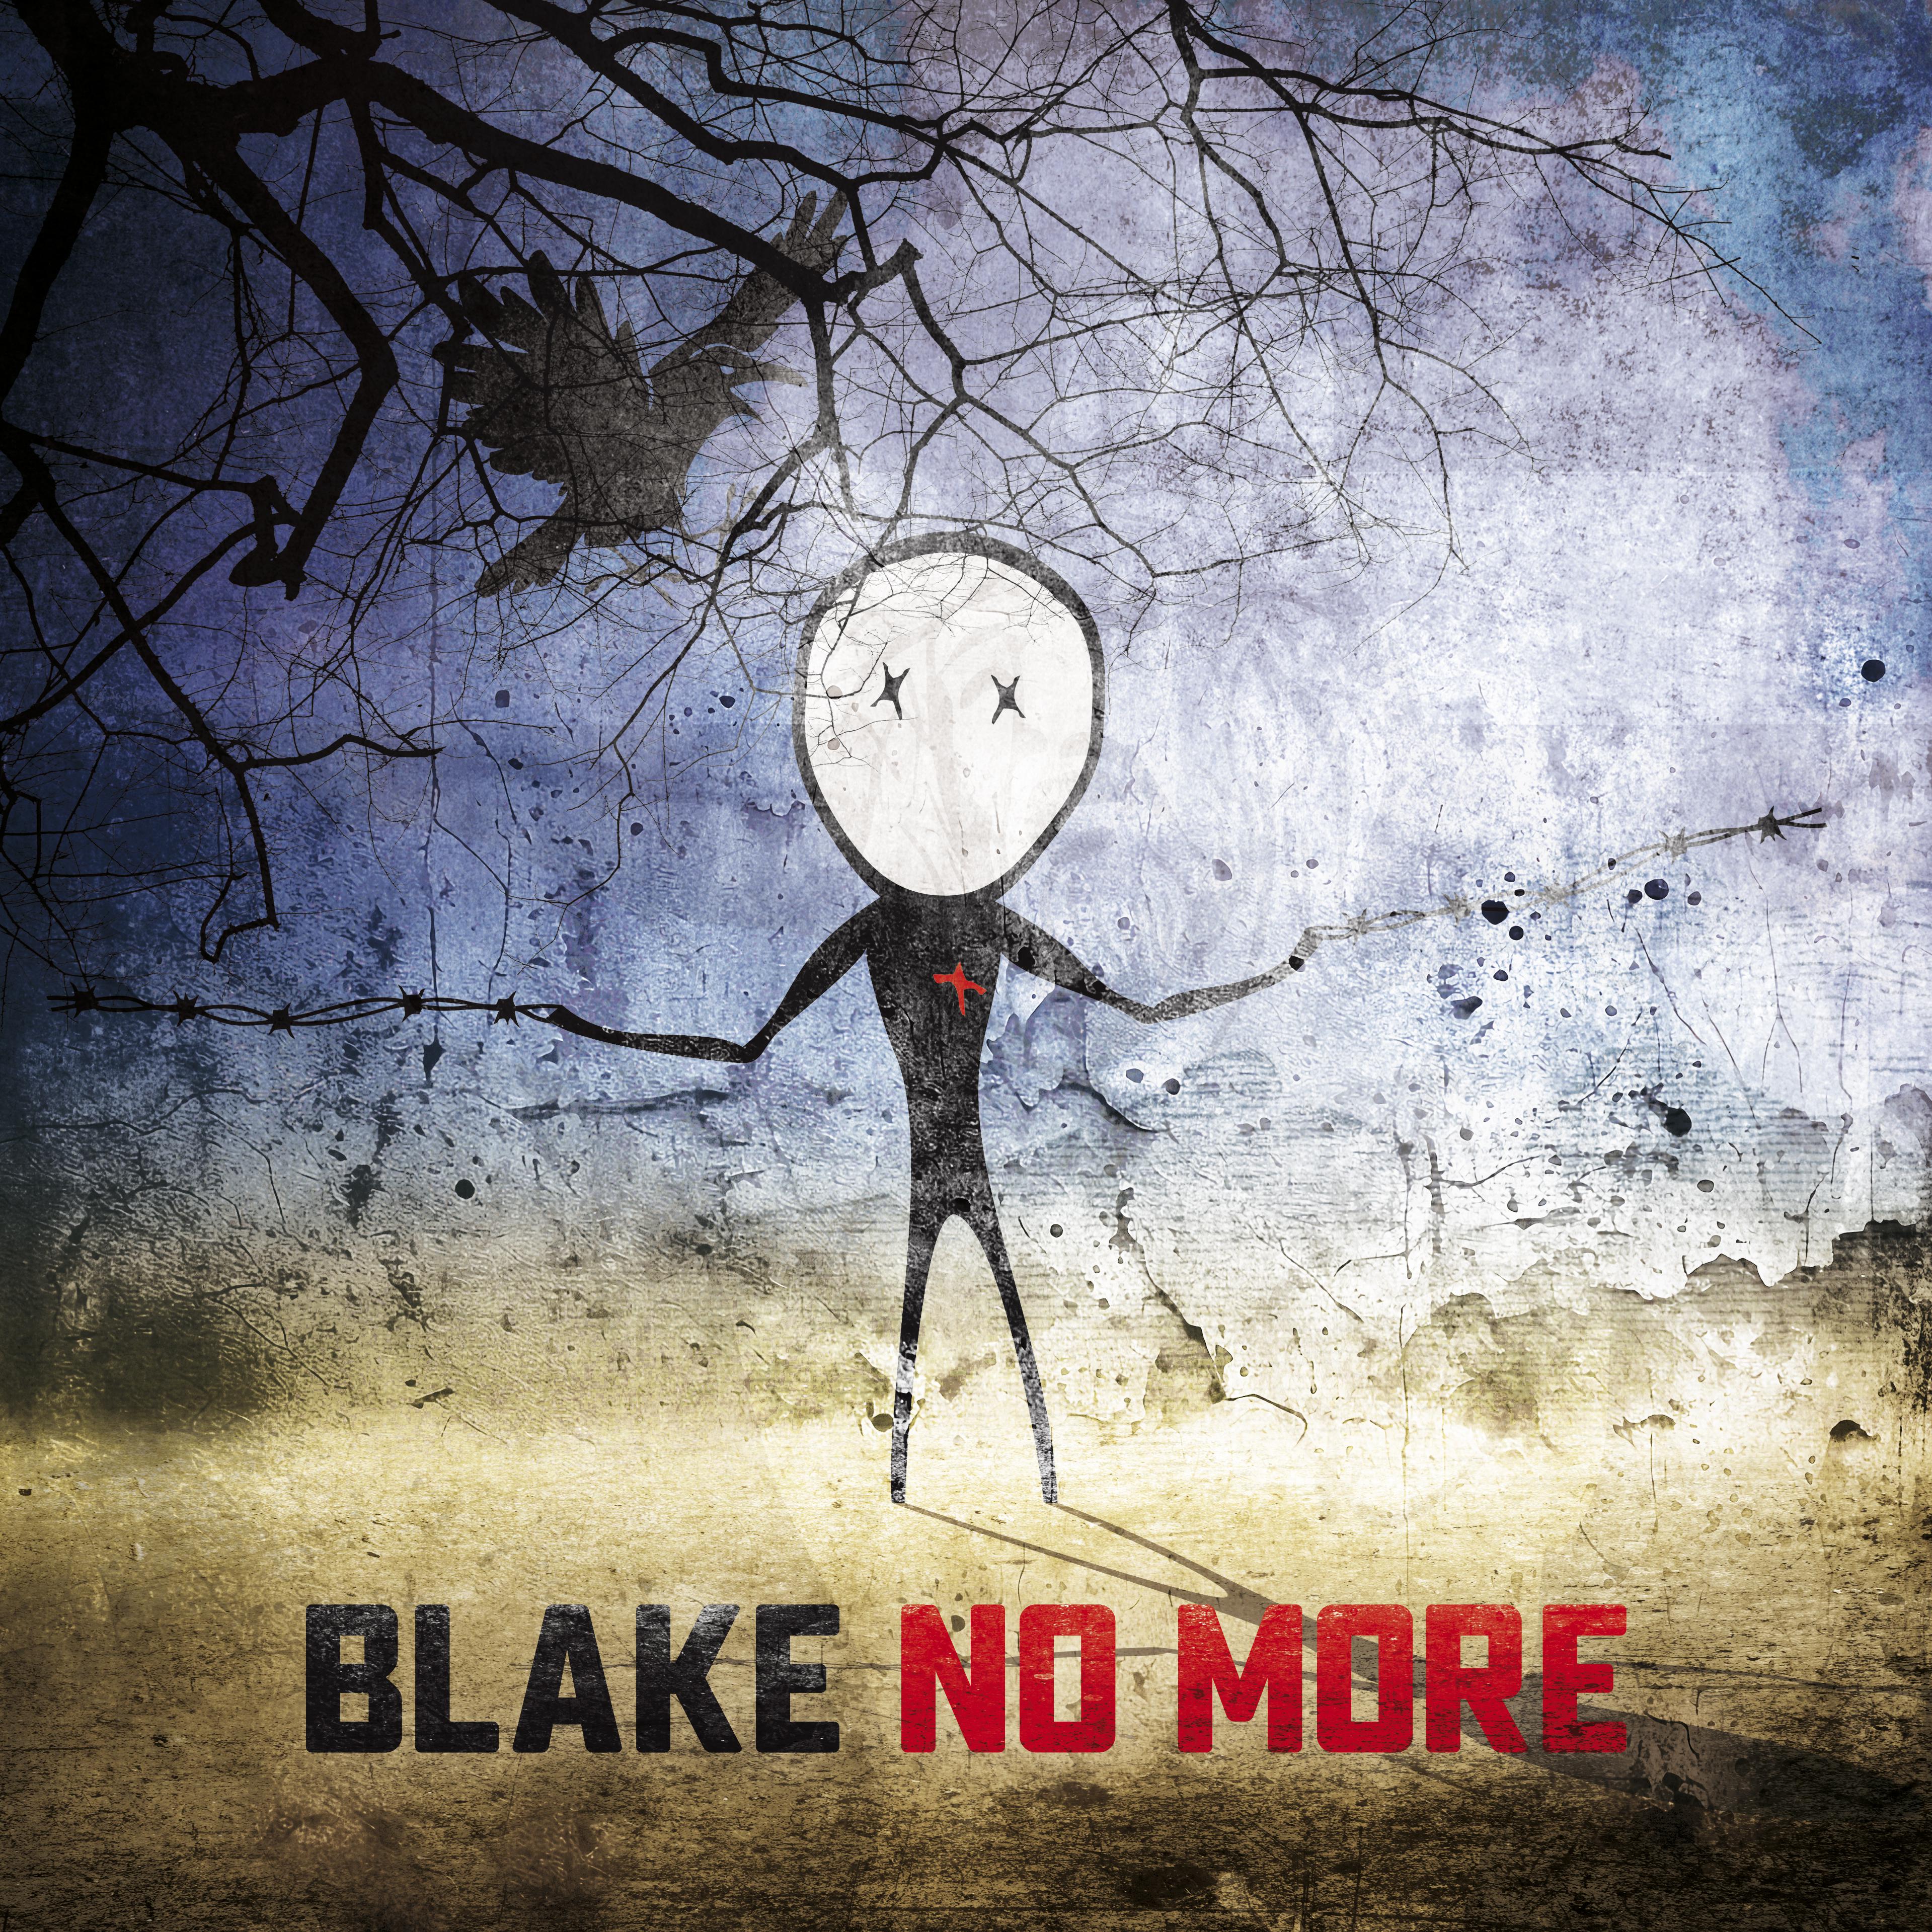 Blake - Way out